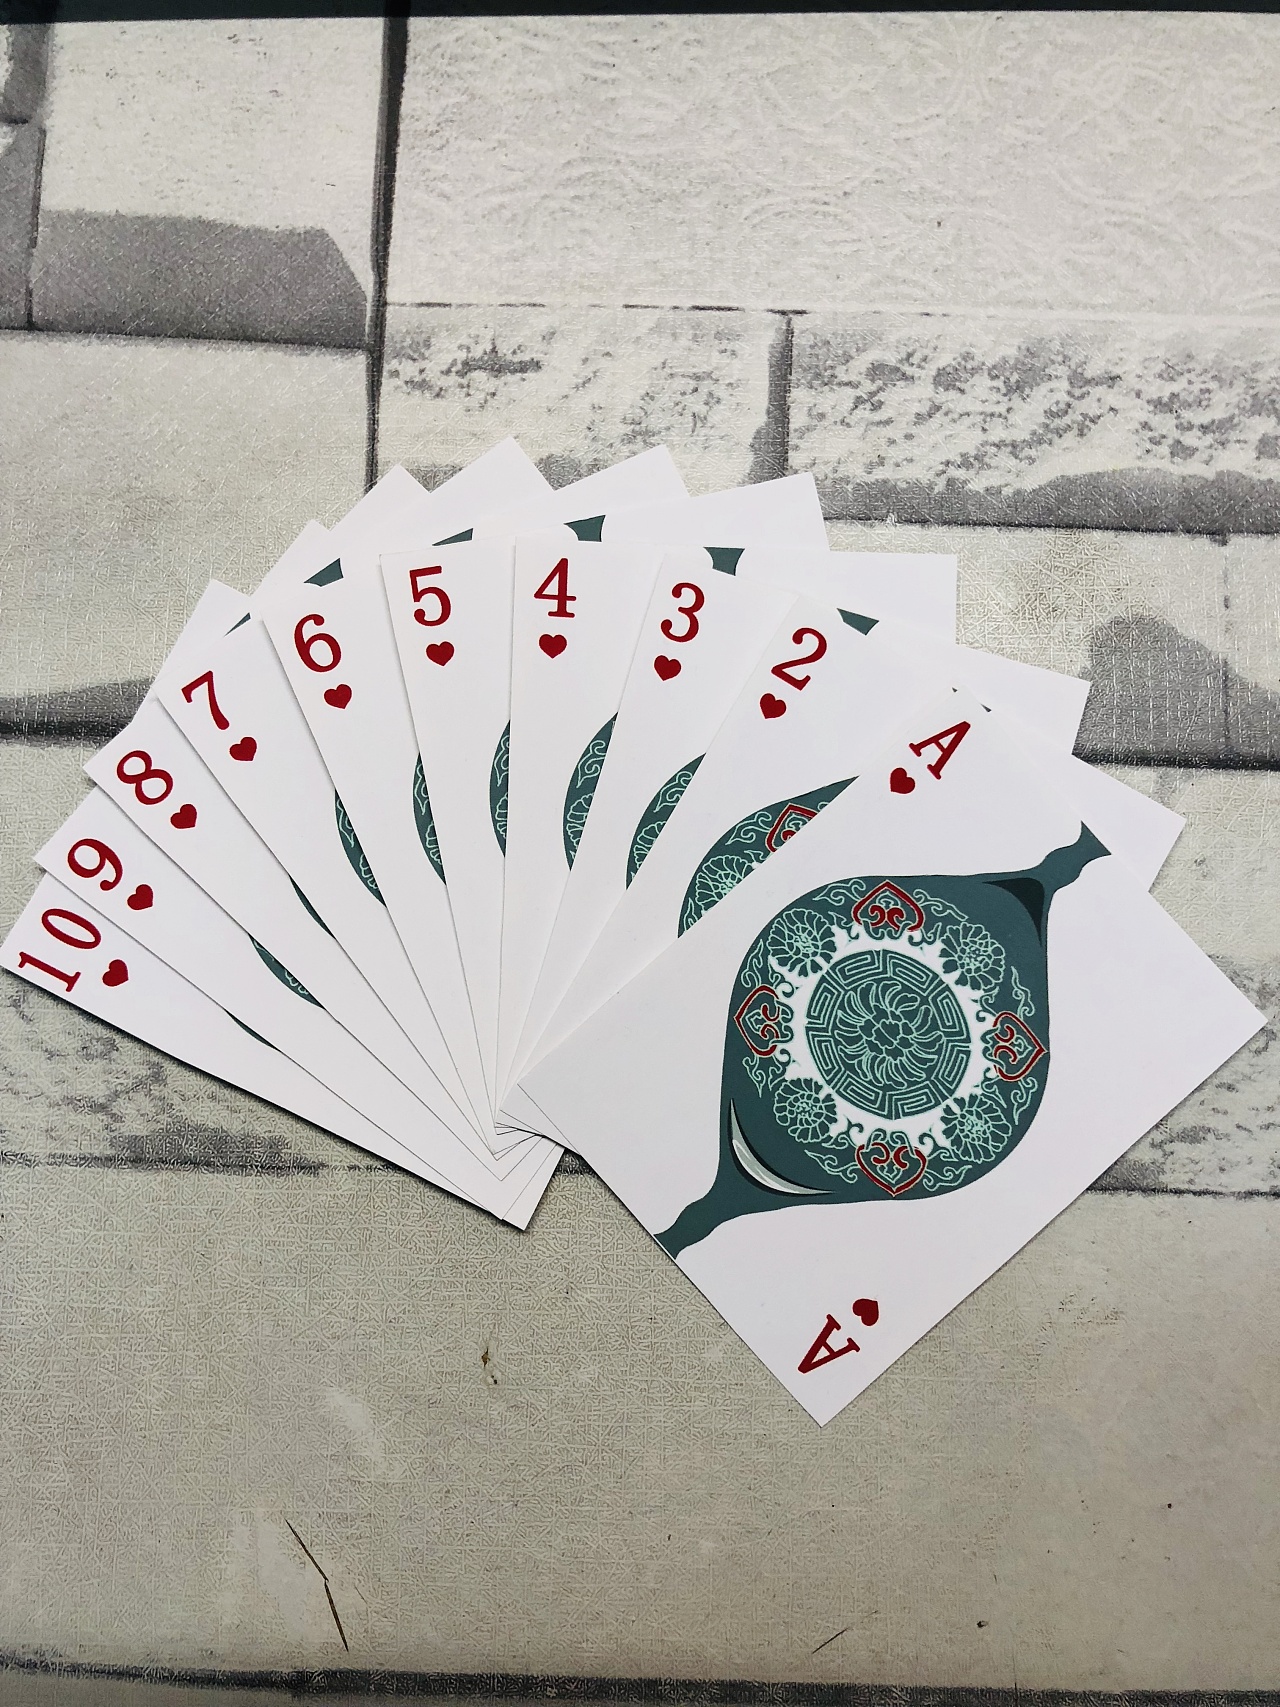 教你如何2秒钟记住54张扑克牌的顺序，特简单，学会后骗朋友玩_哔哩哔哩 (゜-゜)つロ 干杯~-bilibili